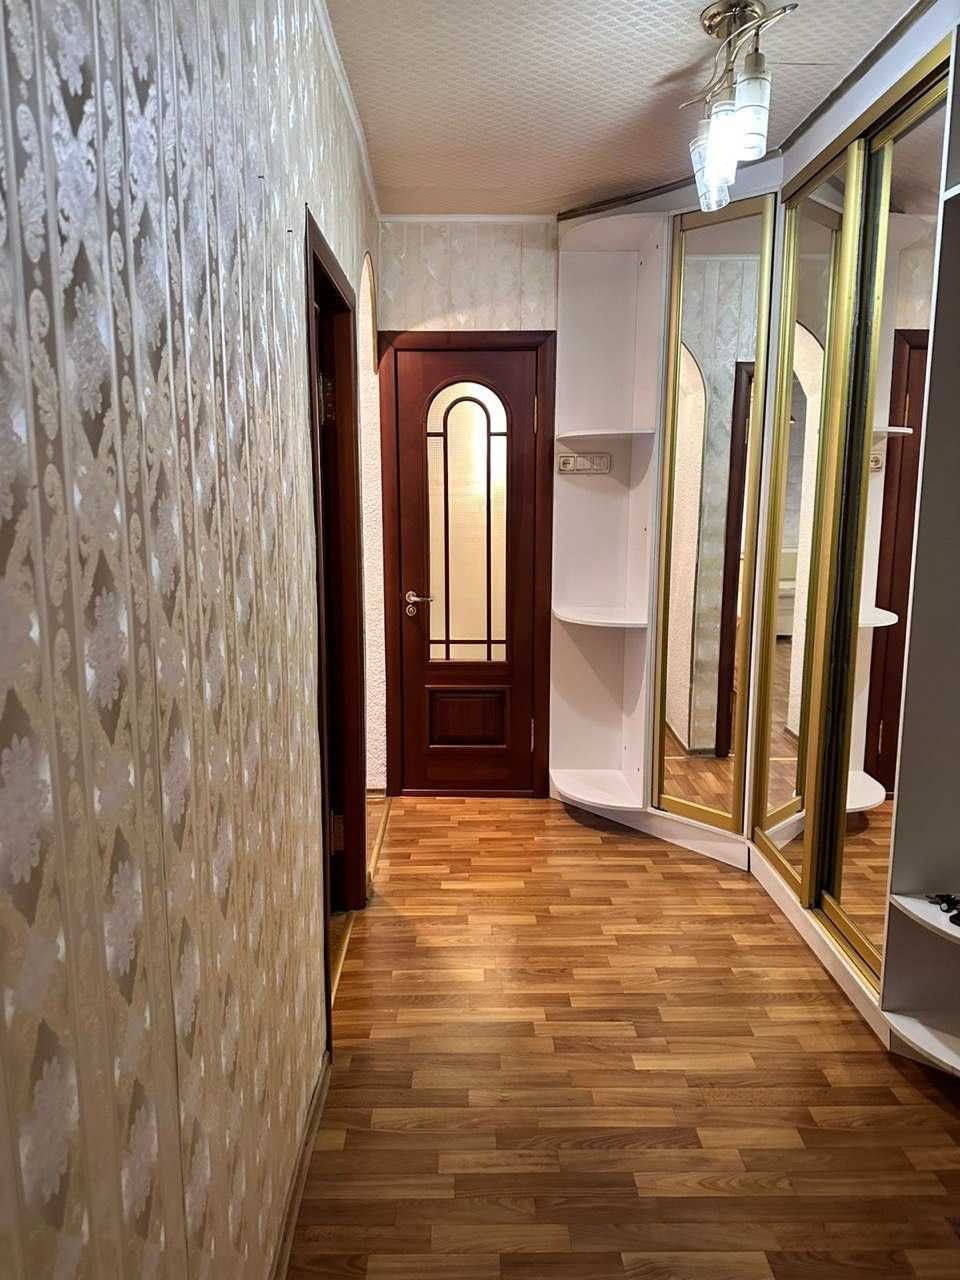 Продается 2х-комнатная квартира в Ворошиловском районе Донецка 50м2